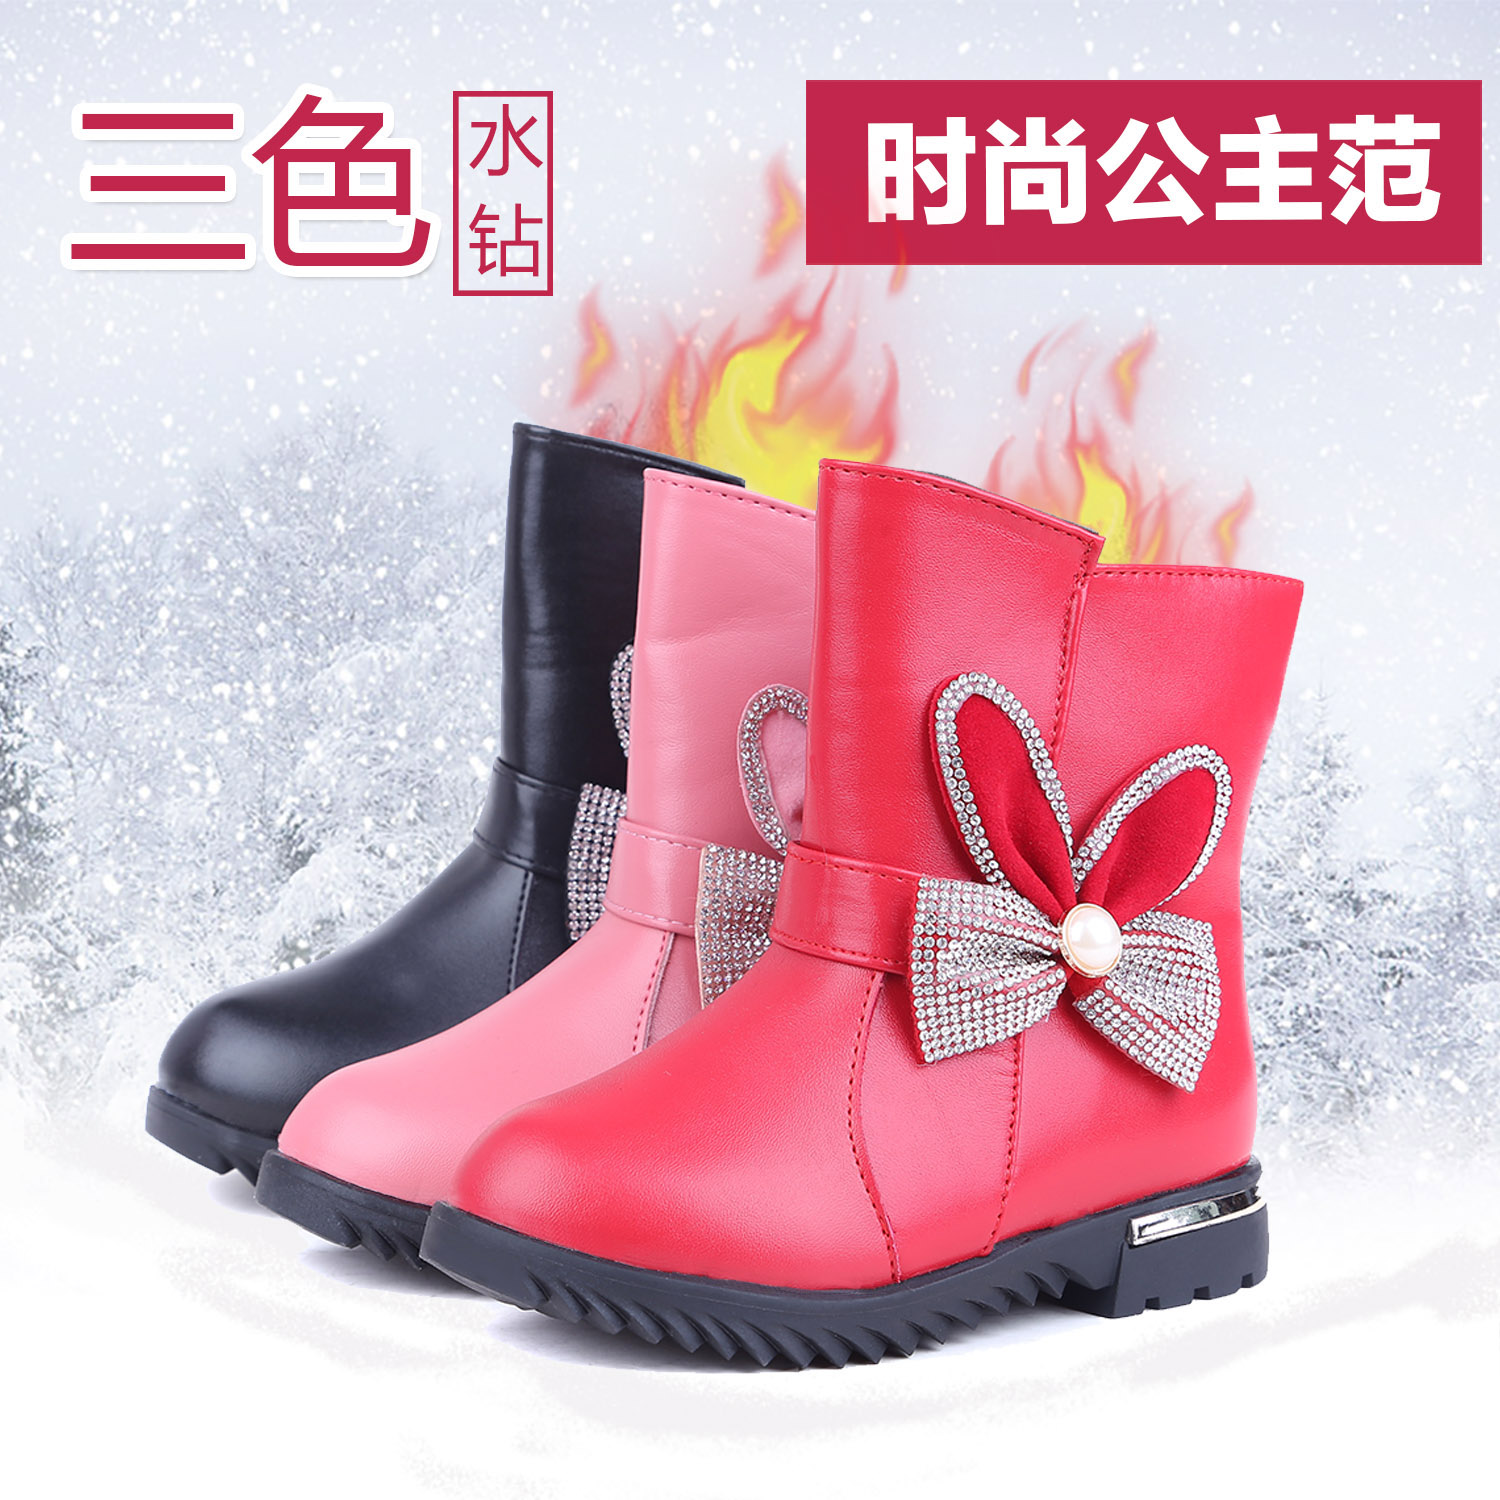 2015冬季韩版女童马丁靴儿童短靴公主皮靴宝宝中筒雪地靴保暖棉鞋折扣优惠信息